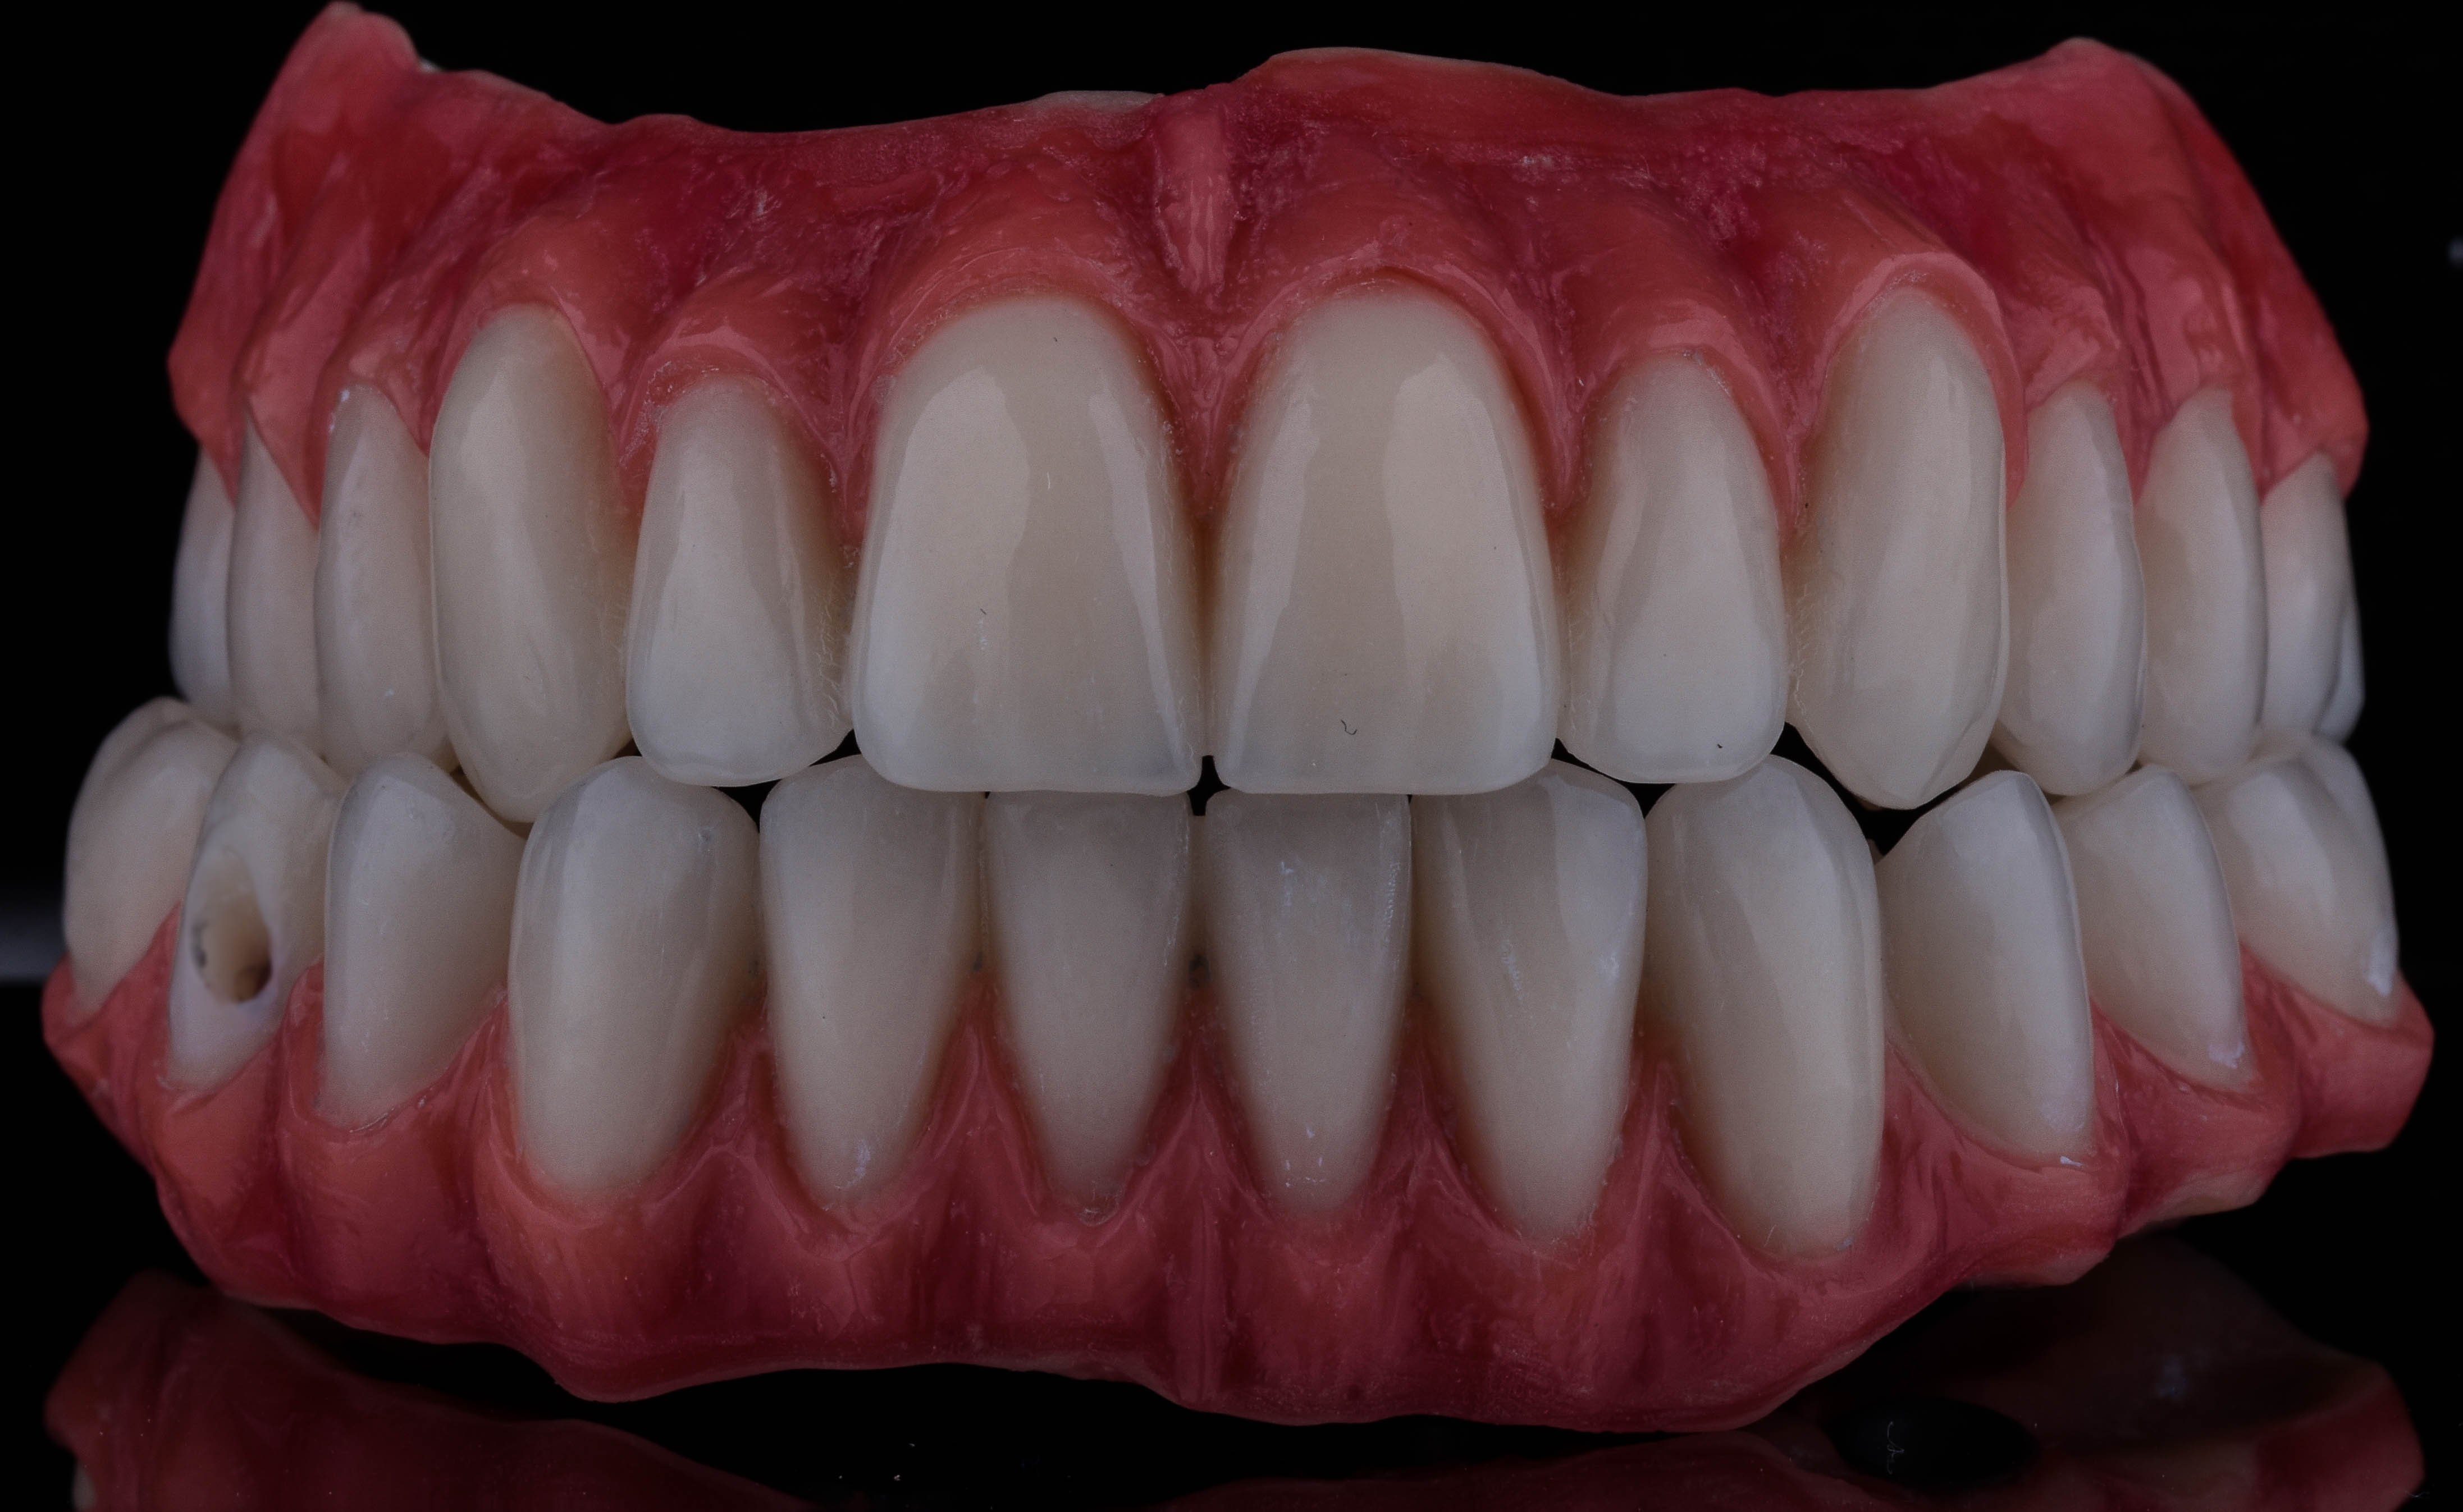 شكل الفك بعد تركيب الأسنان داخل مركز شاينى وايت